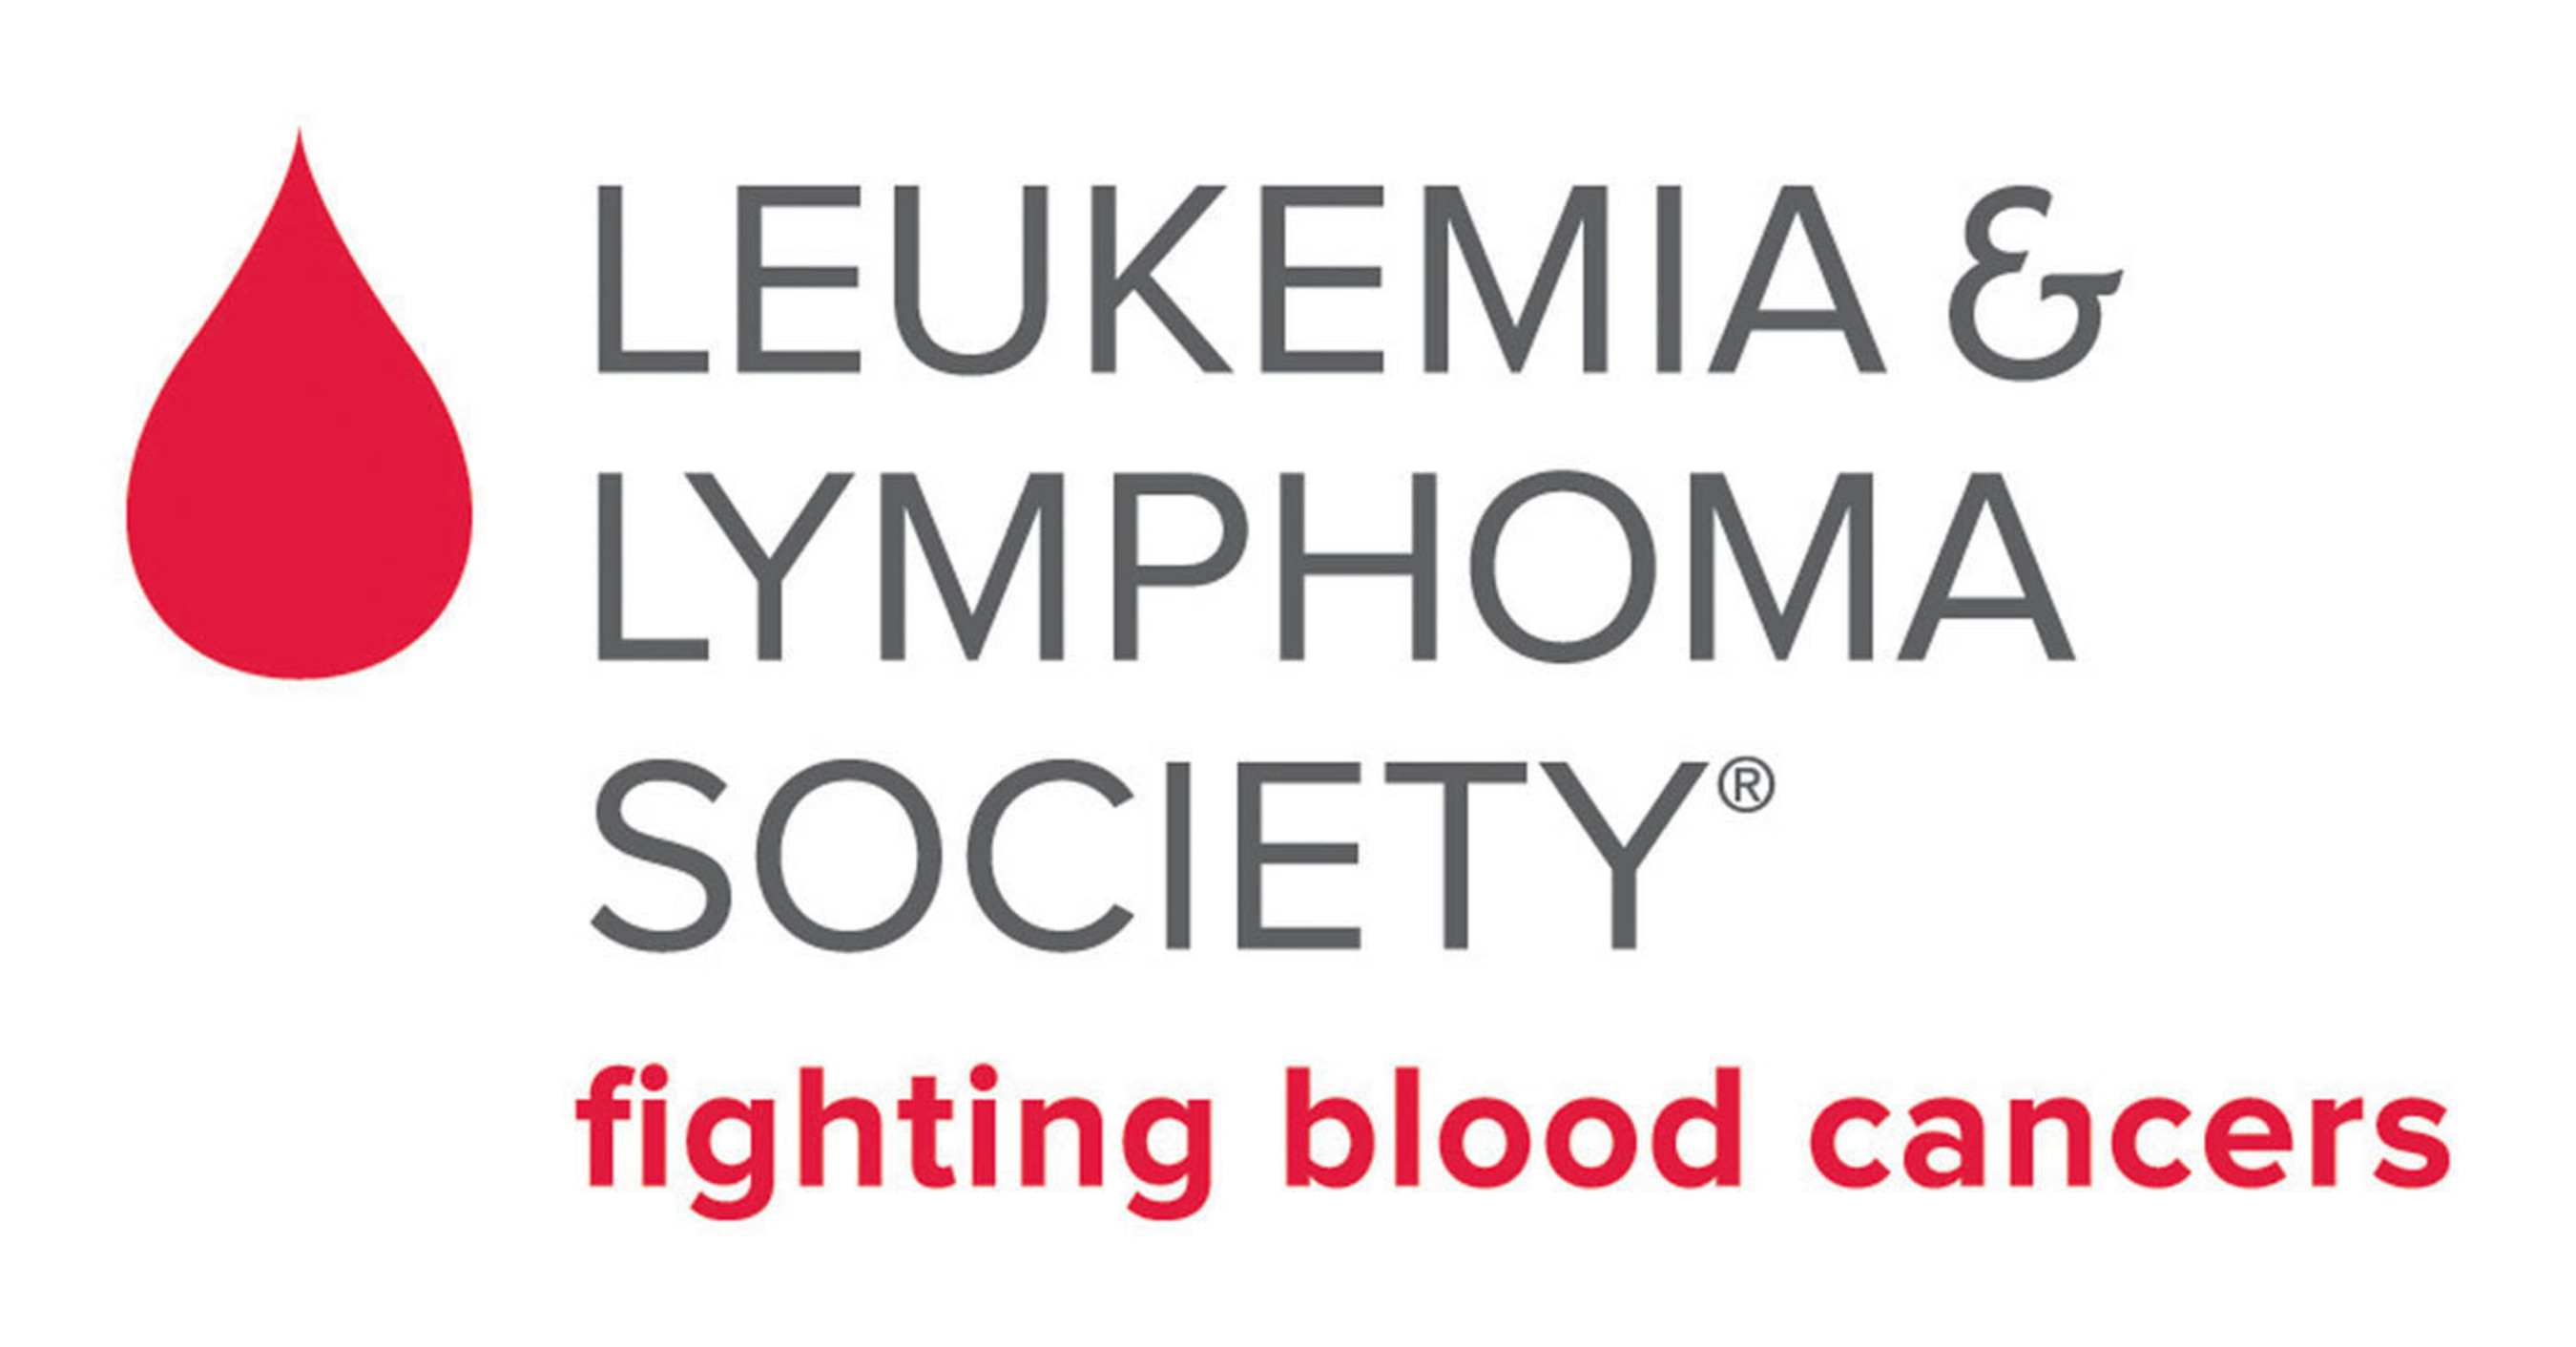 The Leukemia & Lymphoma Society Launches New Logos